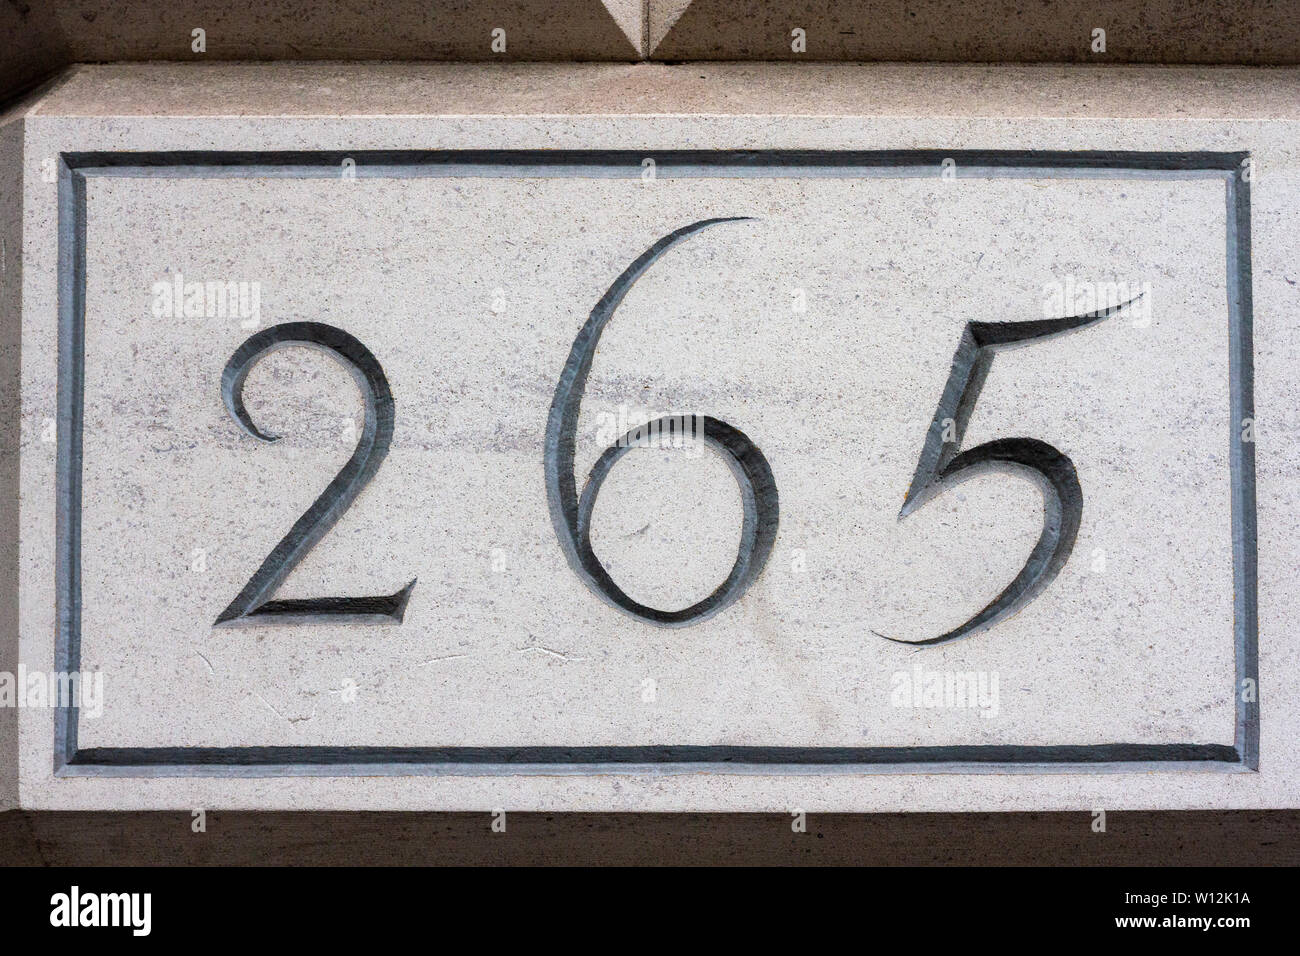 El número de la casa 265 elegantemente esculpida en piedra blanca Foto de stock